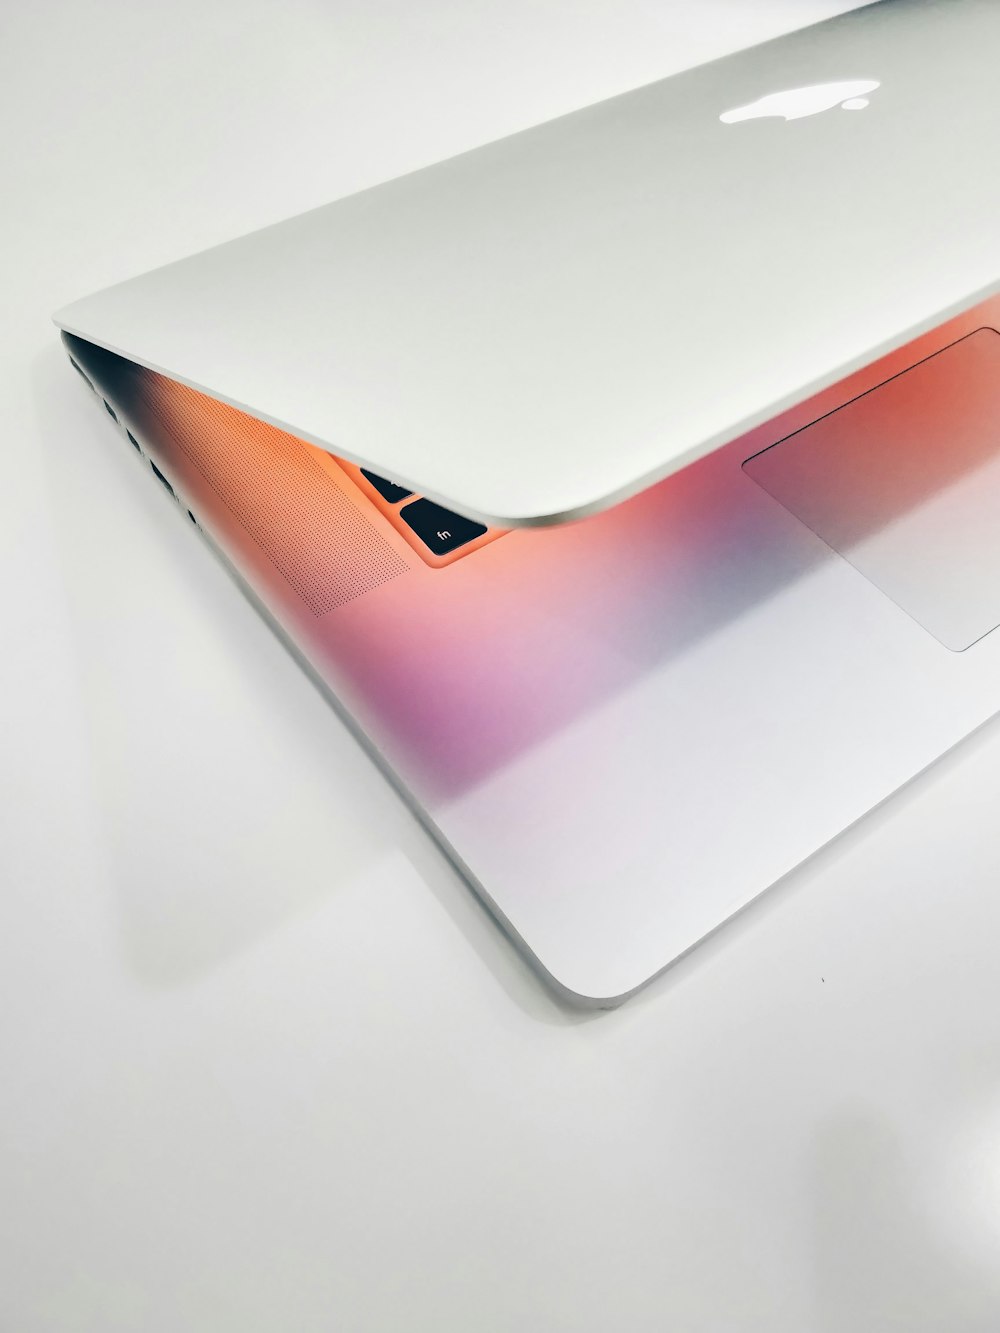 Apple MacBook air sur une surface en bois